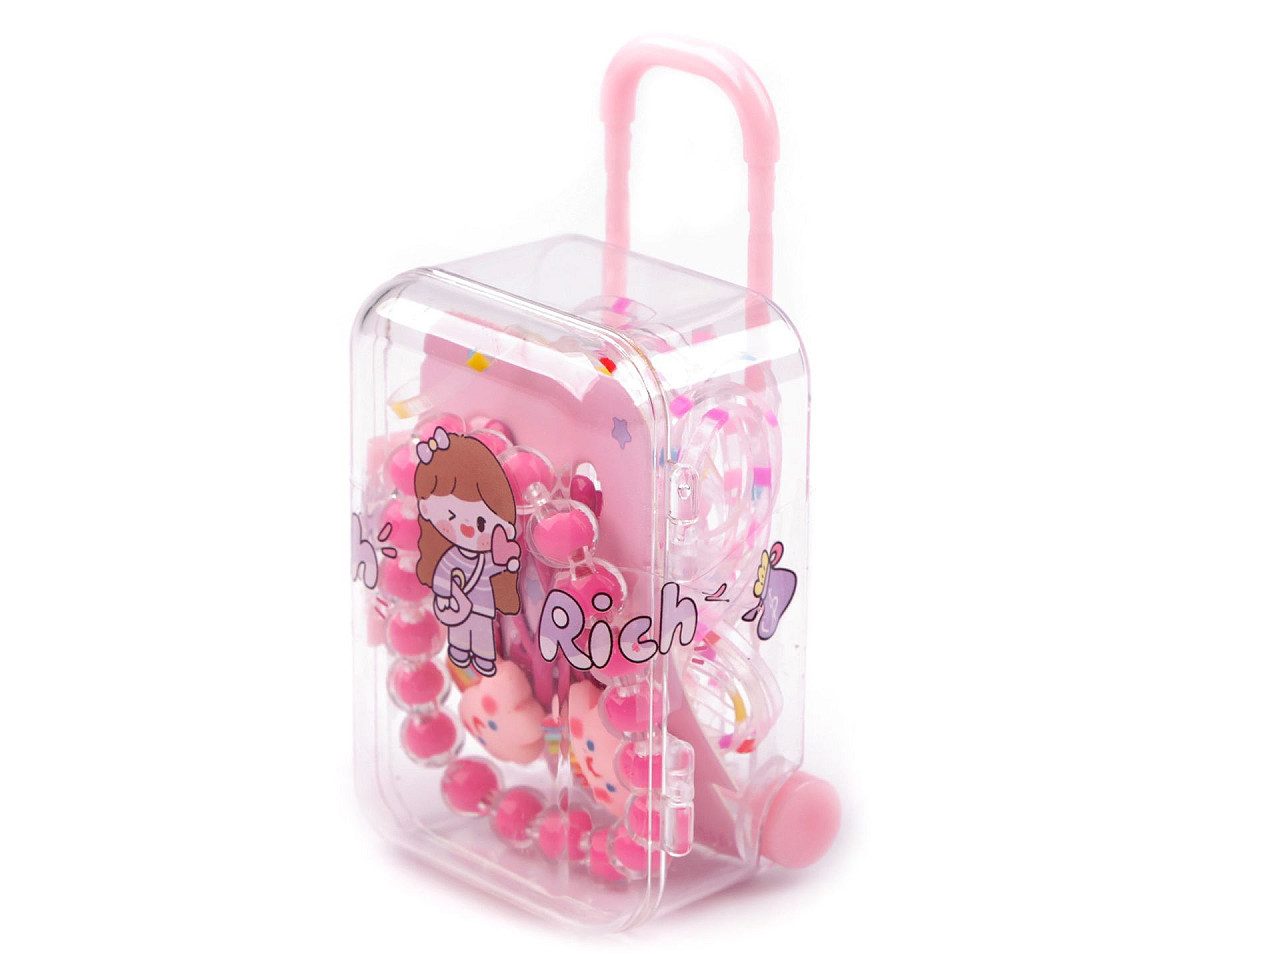 Dětský náramek, pukačky a gumičky v boxu kufr, barva 4 pink duha